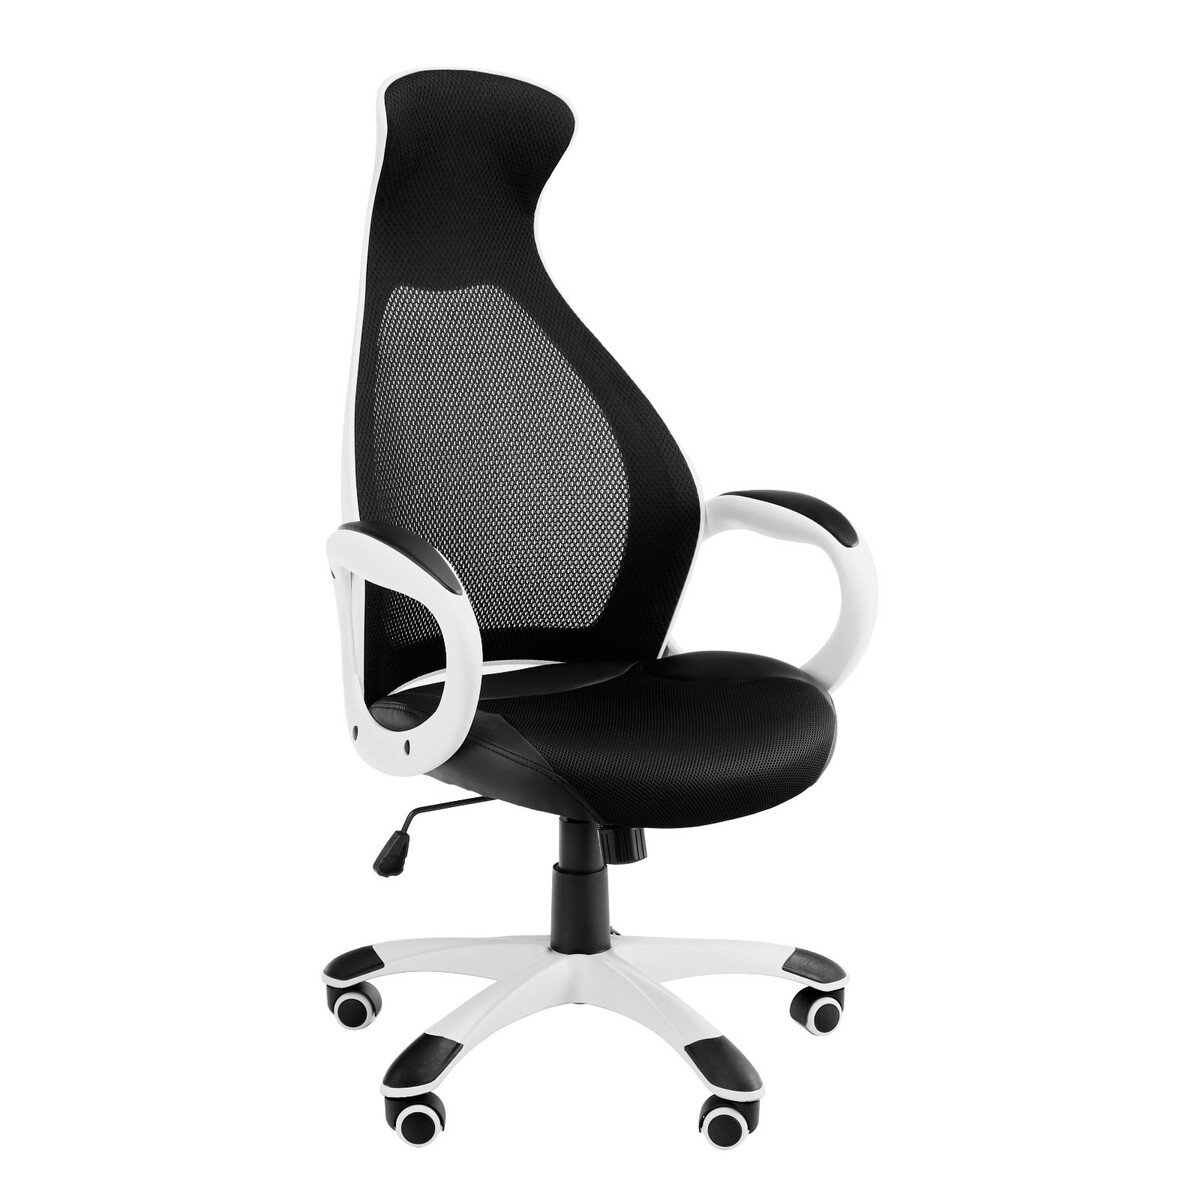 Эргономичное кресло руководителя ys - 717, белое easy chair кресло для руководителя 506 tpu